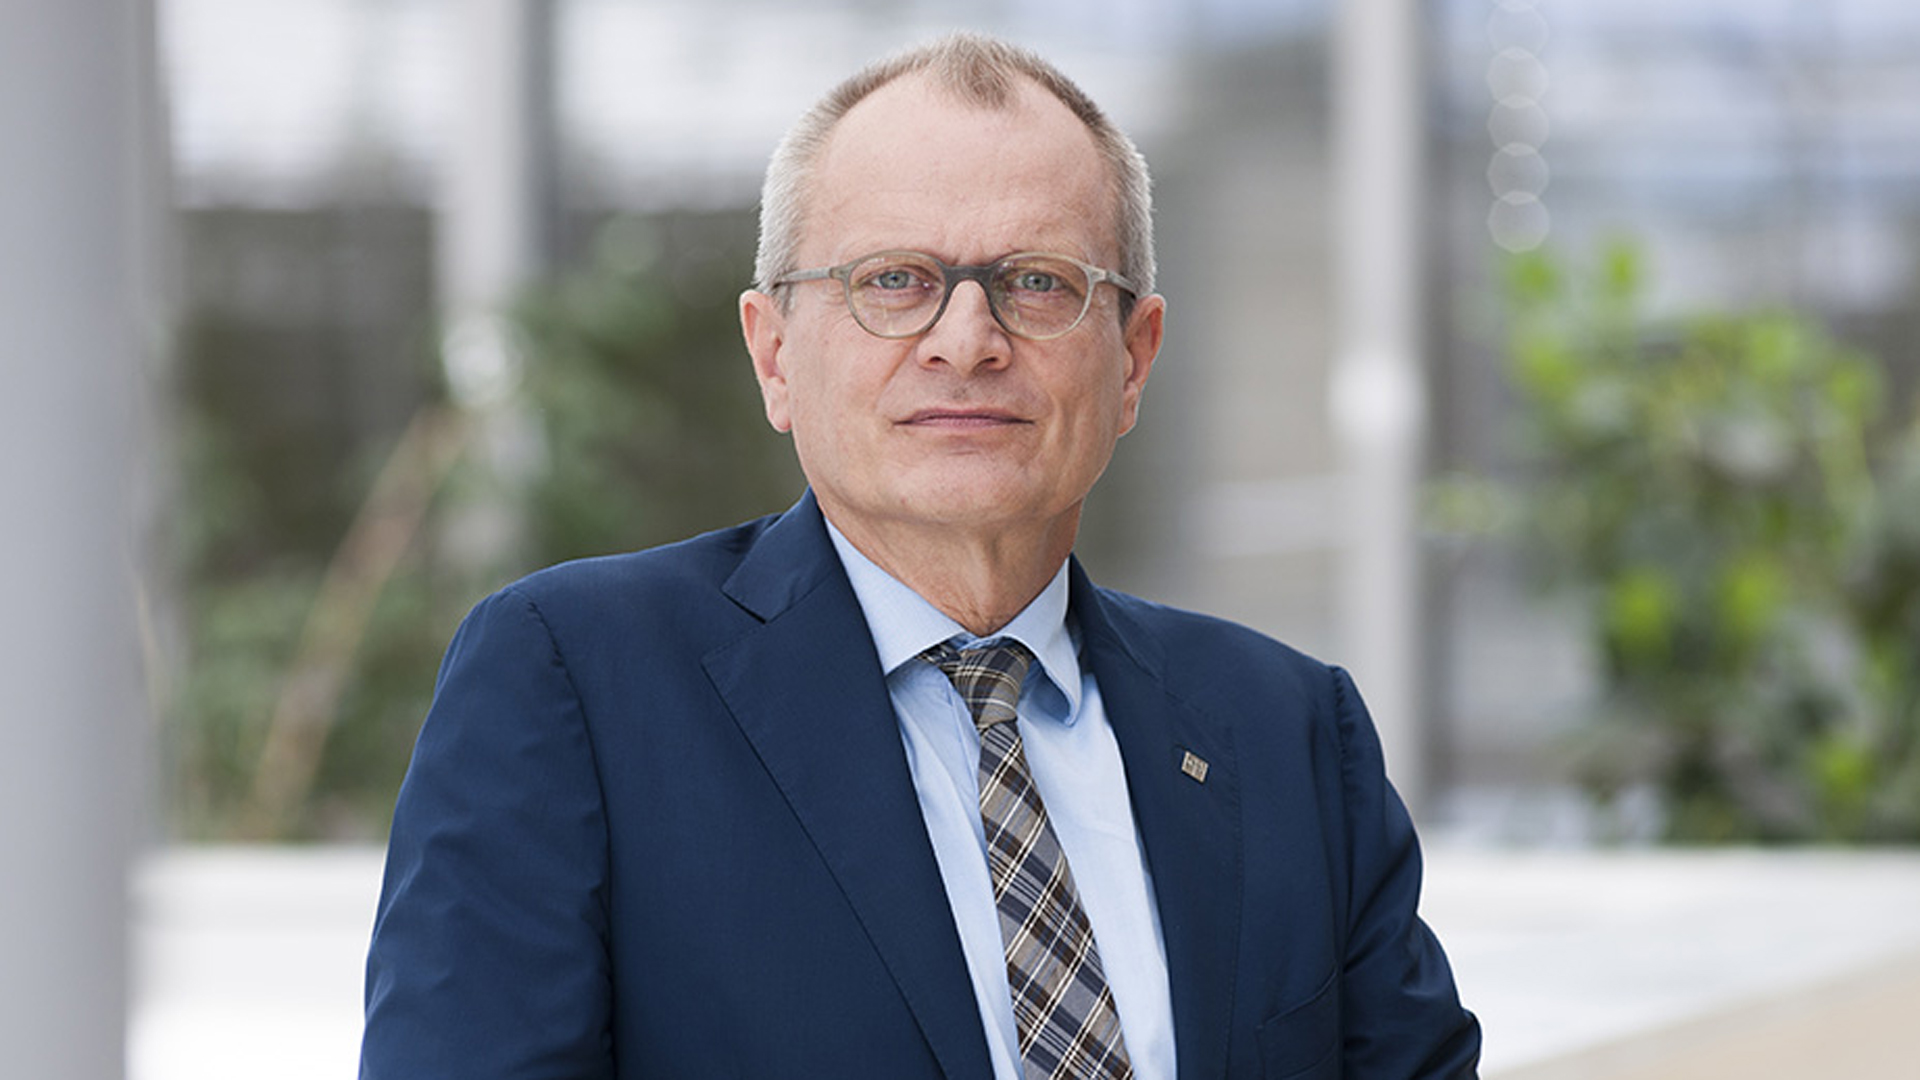 Seit 2014 ist Ulrich Lilie, Jahrgang 1957, Präsident der Diakonie Deutschland. Zuvor war er unter anderem als Krankenhausseelsorger und Gemeindepfarrer tätig.